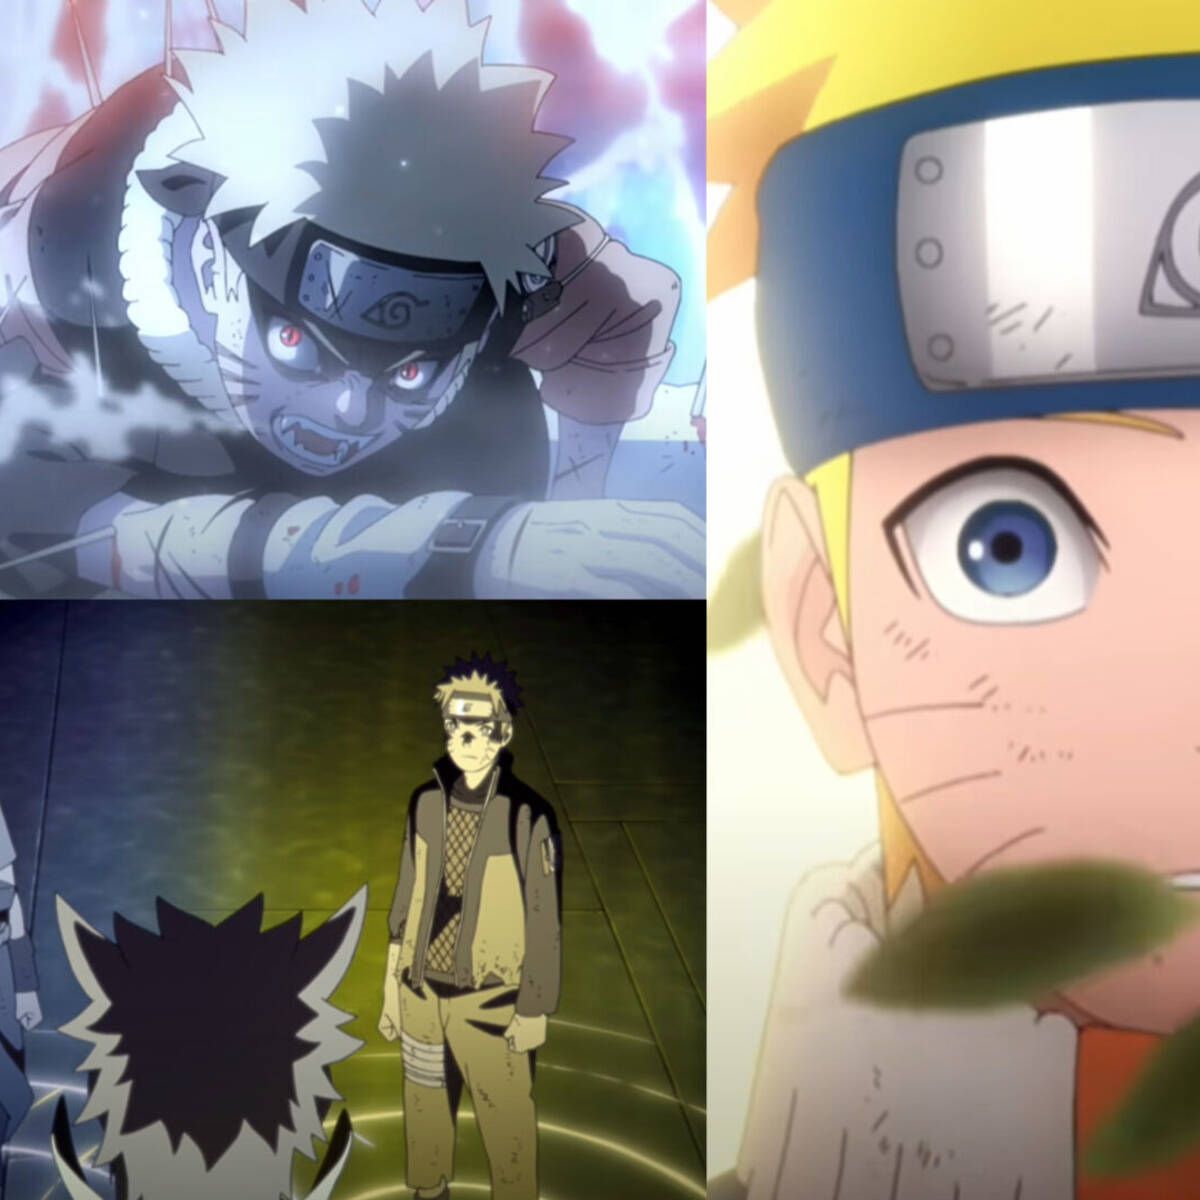 Naruto: El increíble vídeo oficial que resume TODO el anime en 10 minutos